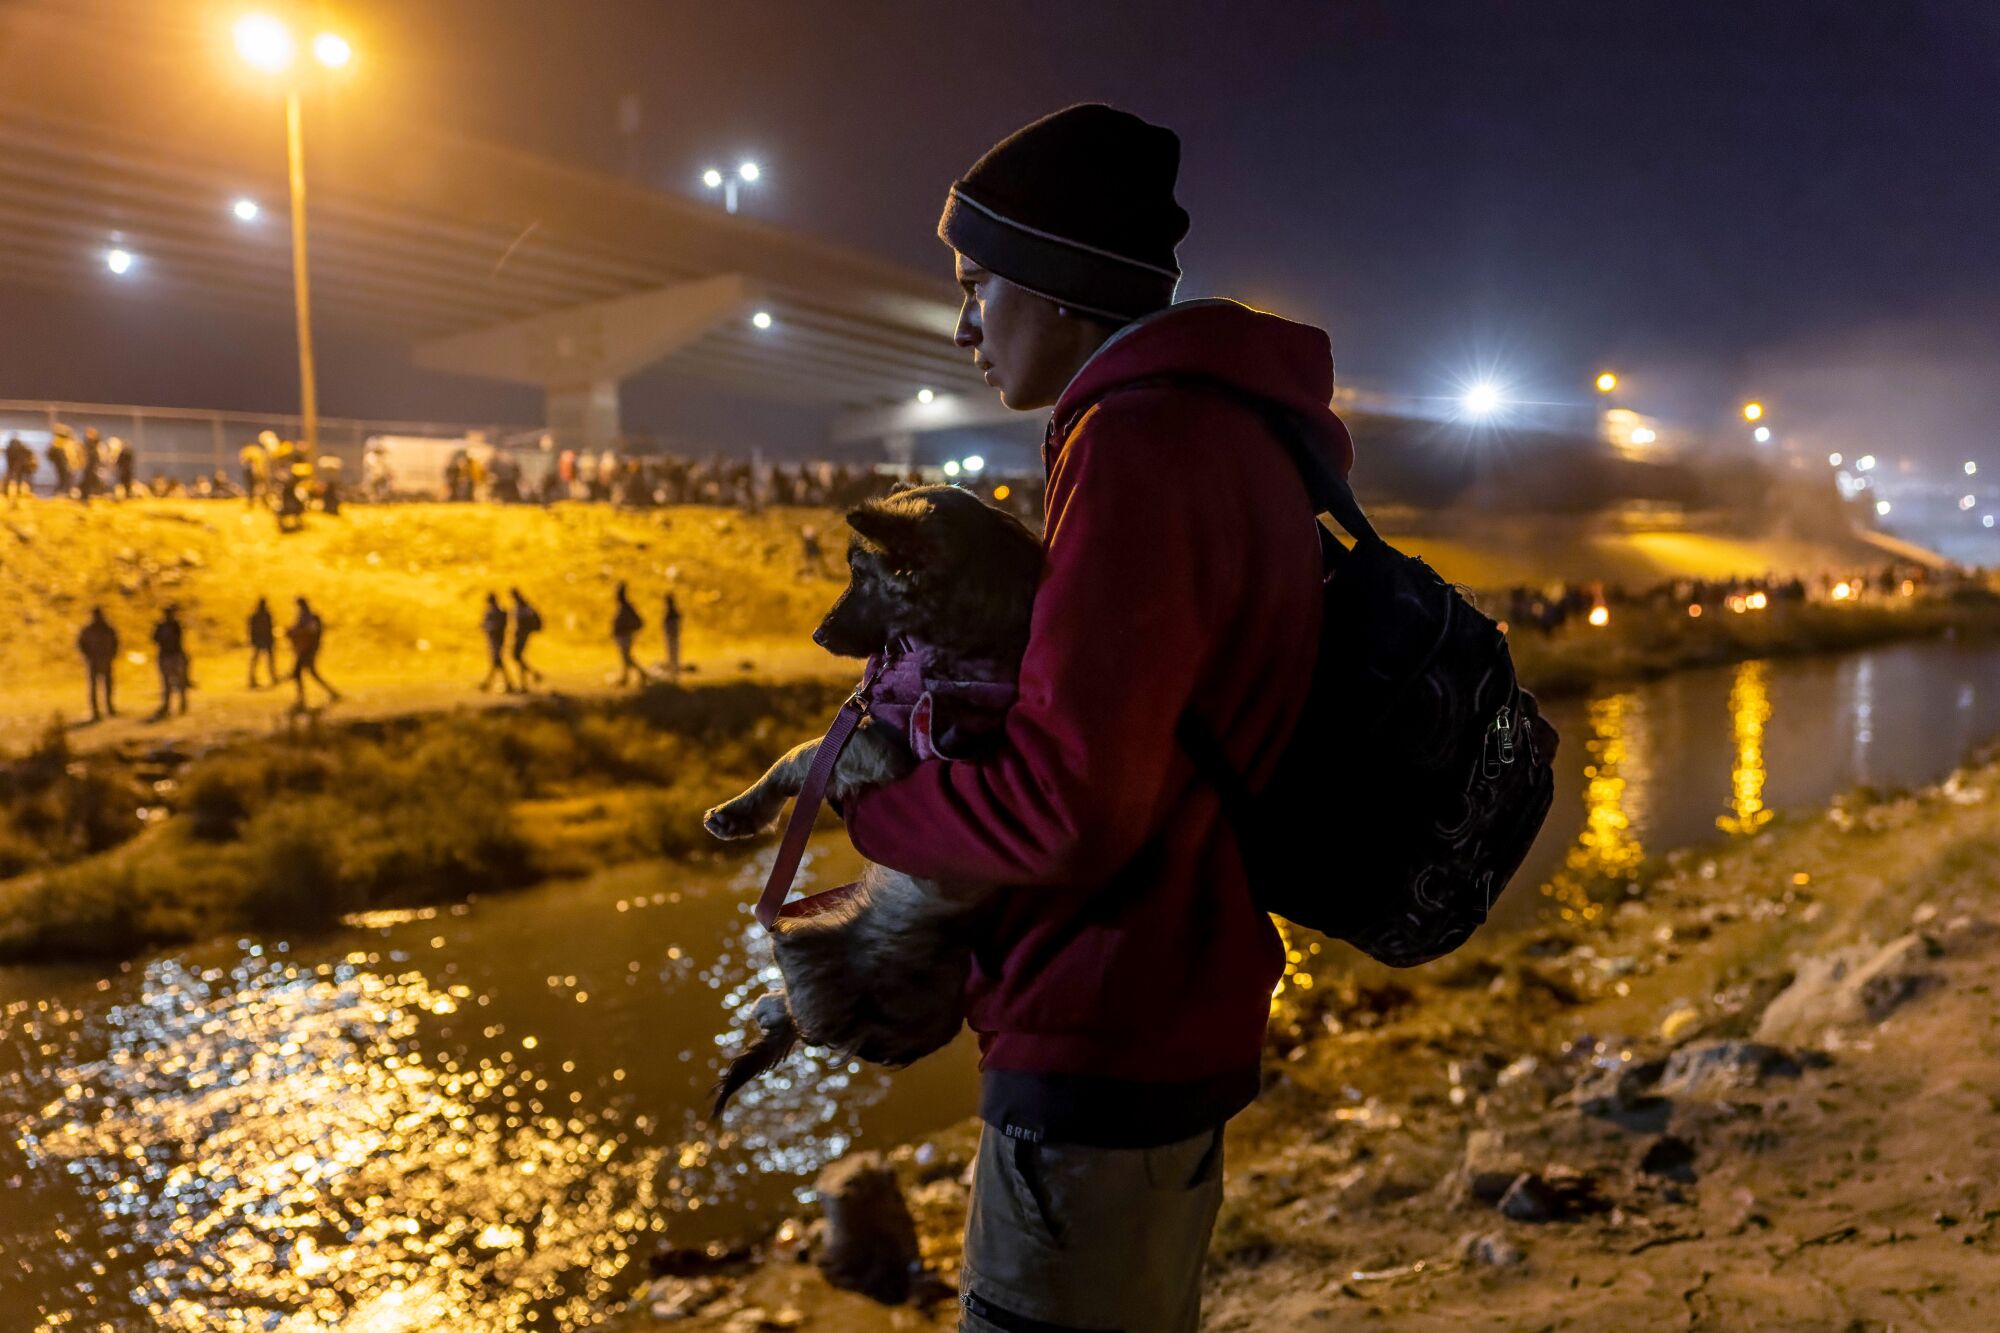 یک مهاجر، جیدر، توله سگ خود را در حالی که از ریو گرانده به سمت ال پاسو نگاه می کند، نگه می دارد.